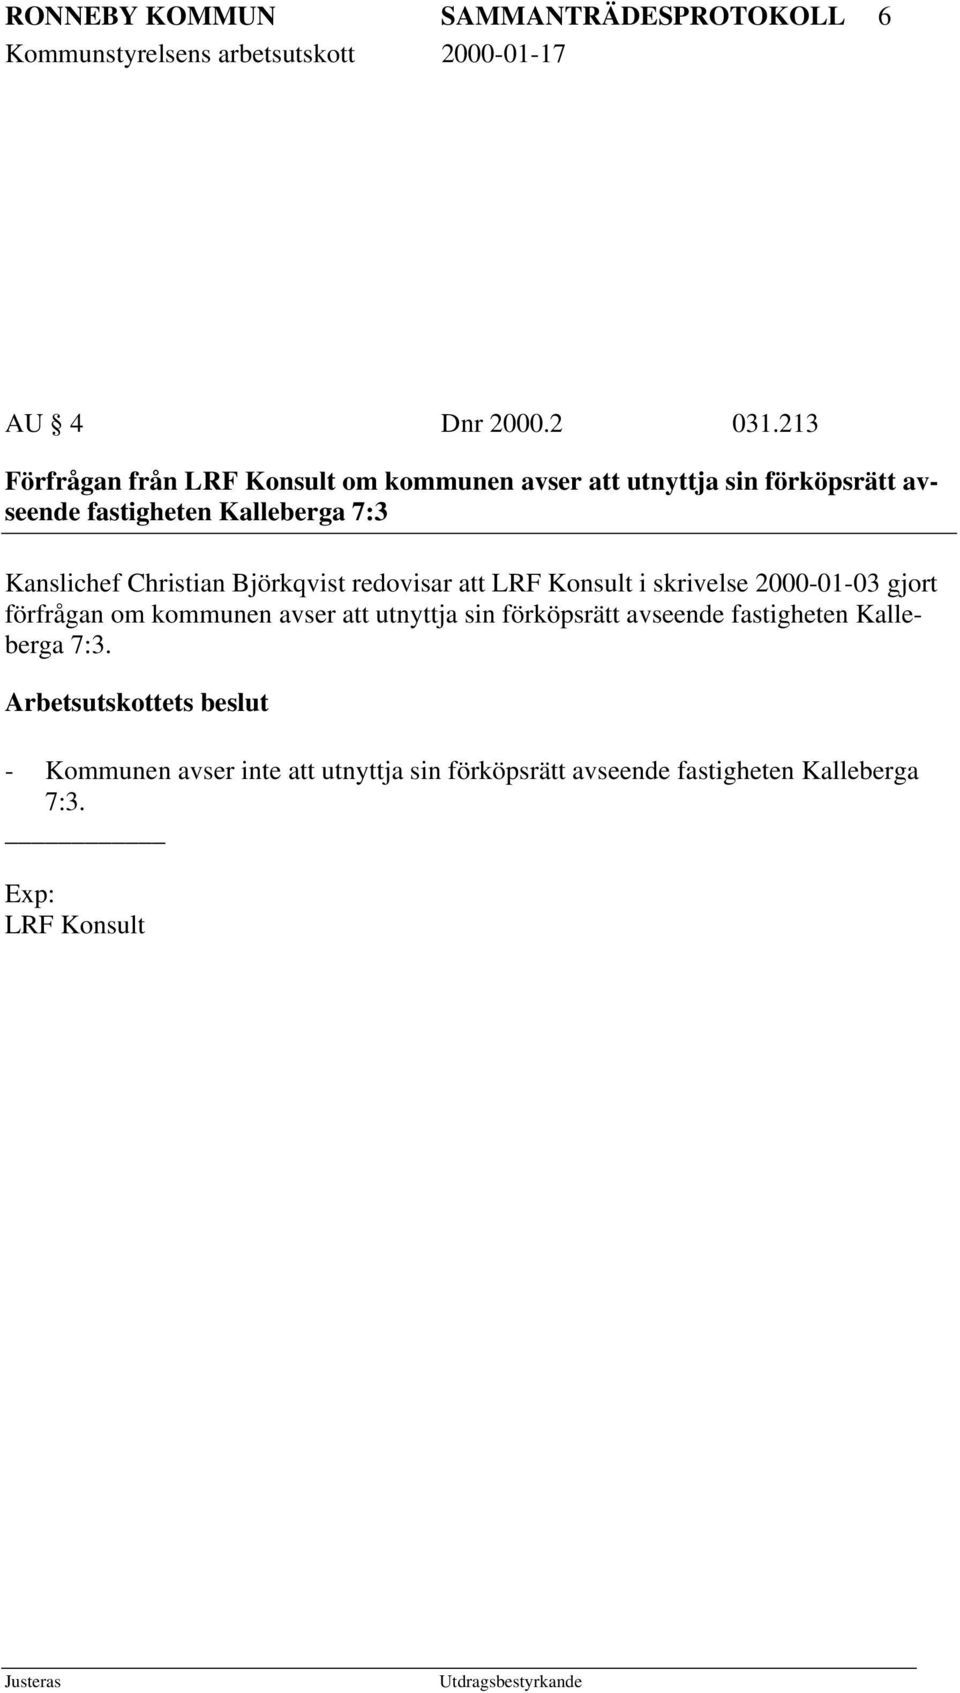 Kanslichef Christian Björkqvist redovisar att LRF Konsult i skrivelse 2000-01-03 gjort förfrågan om kommunen avser att